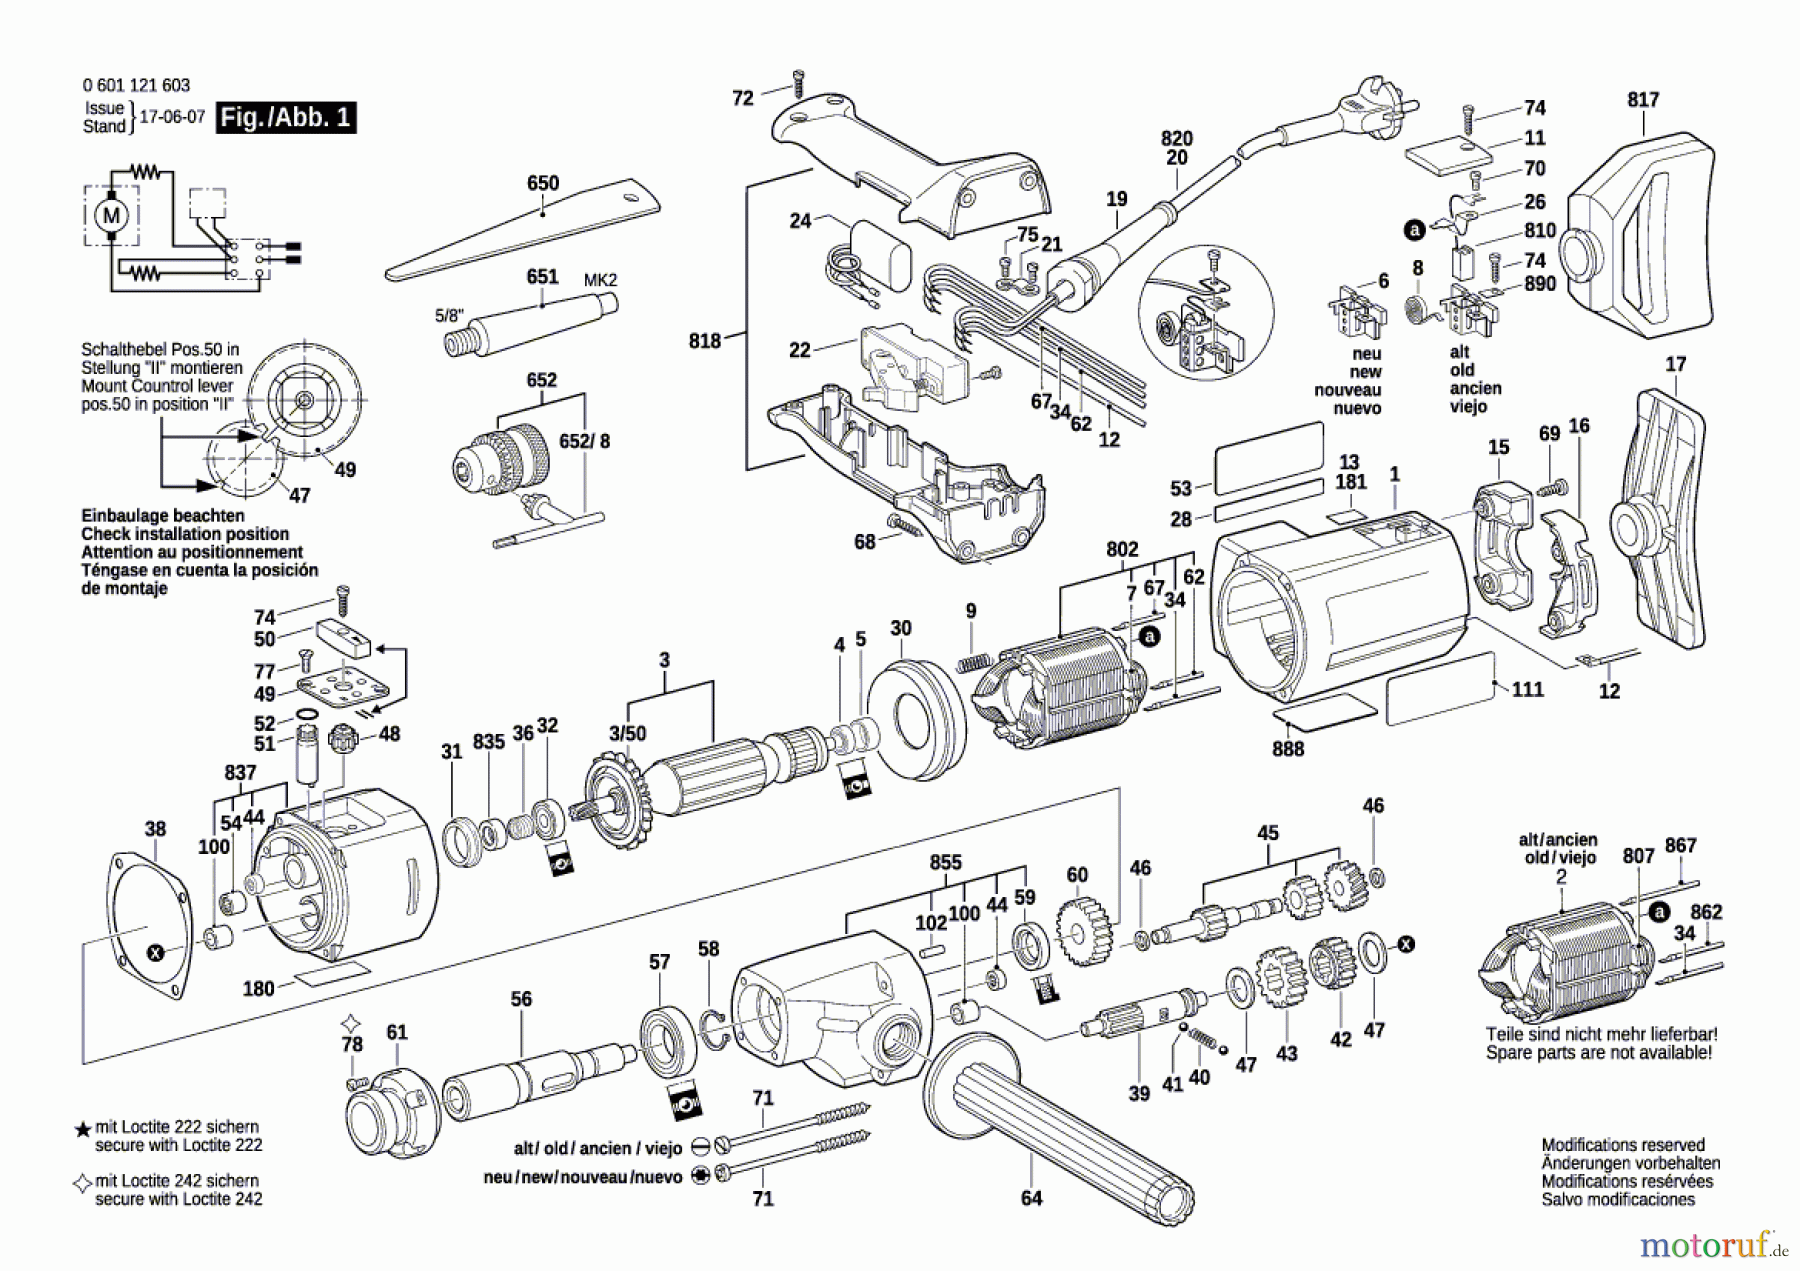  Bosch Werkzeug Bohrmaschine GBM 23-2 E Seite 1